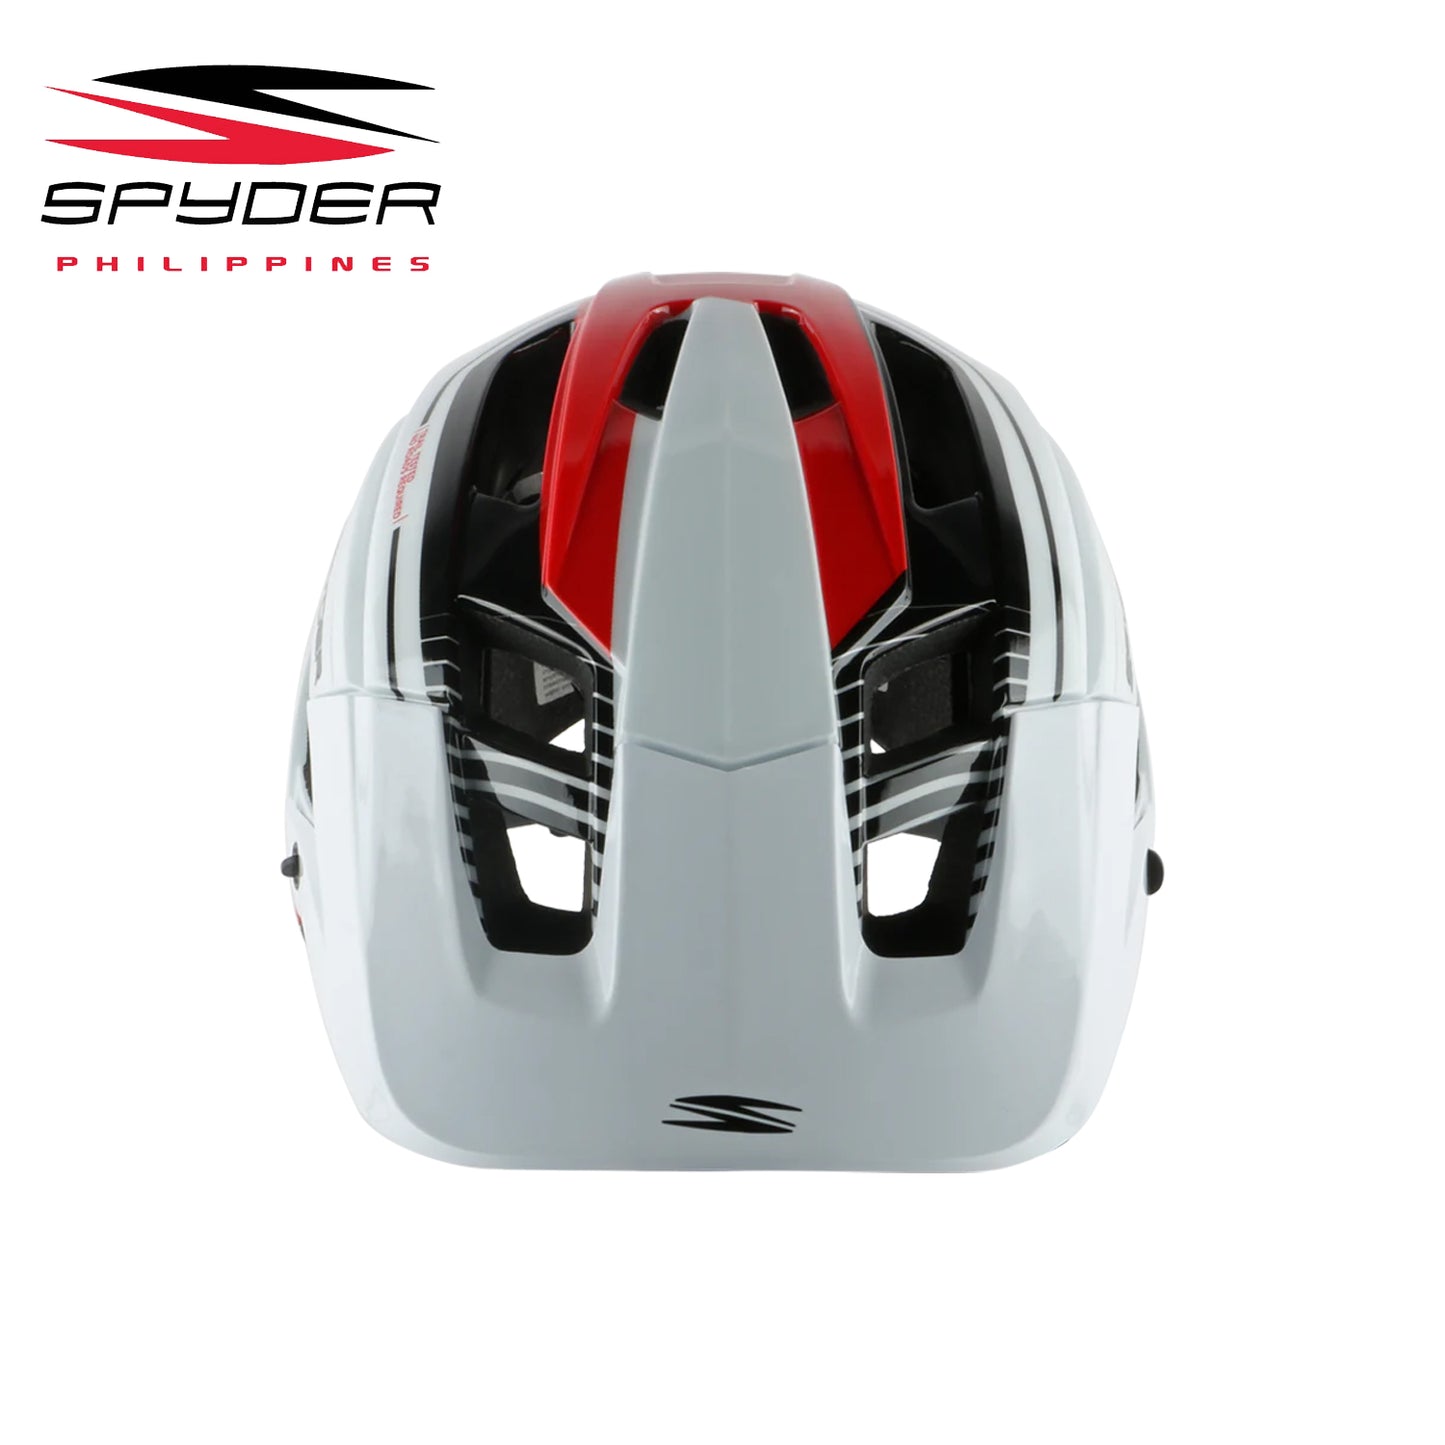 Spyder SHRED All-Mountain / Trail MTB Bike Helmet - White/Red